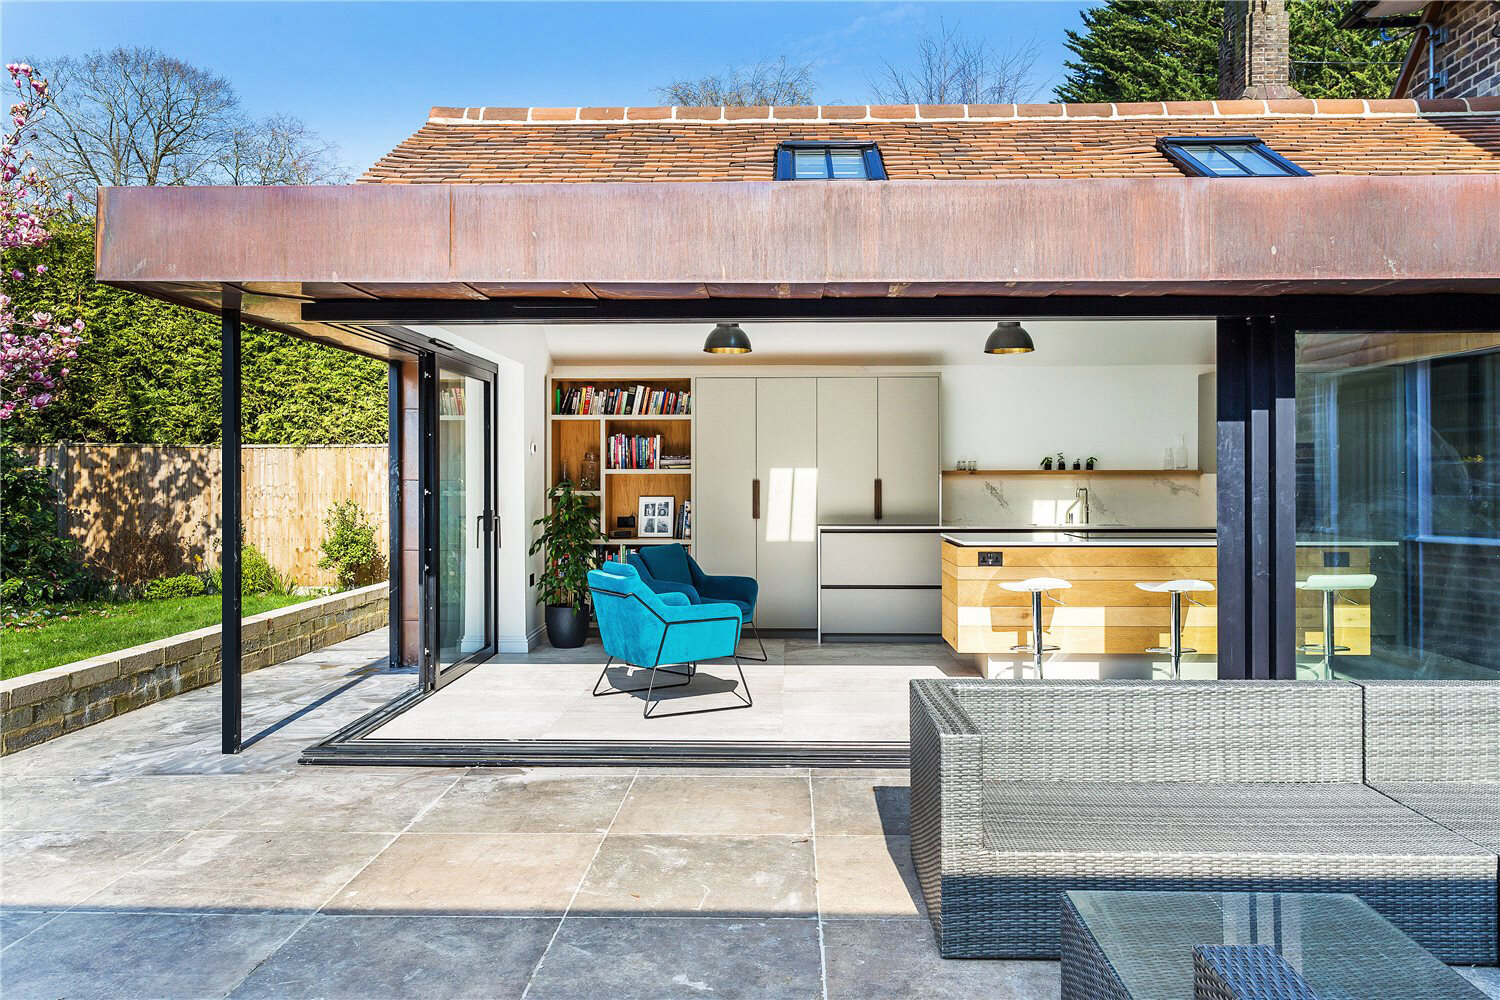 West Common, Haywards Heath, West Sussex — Fletcher Crane Architects